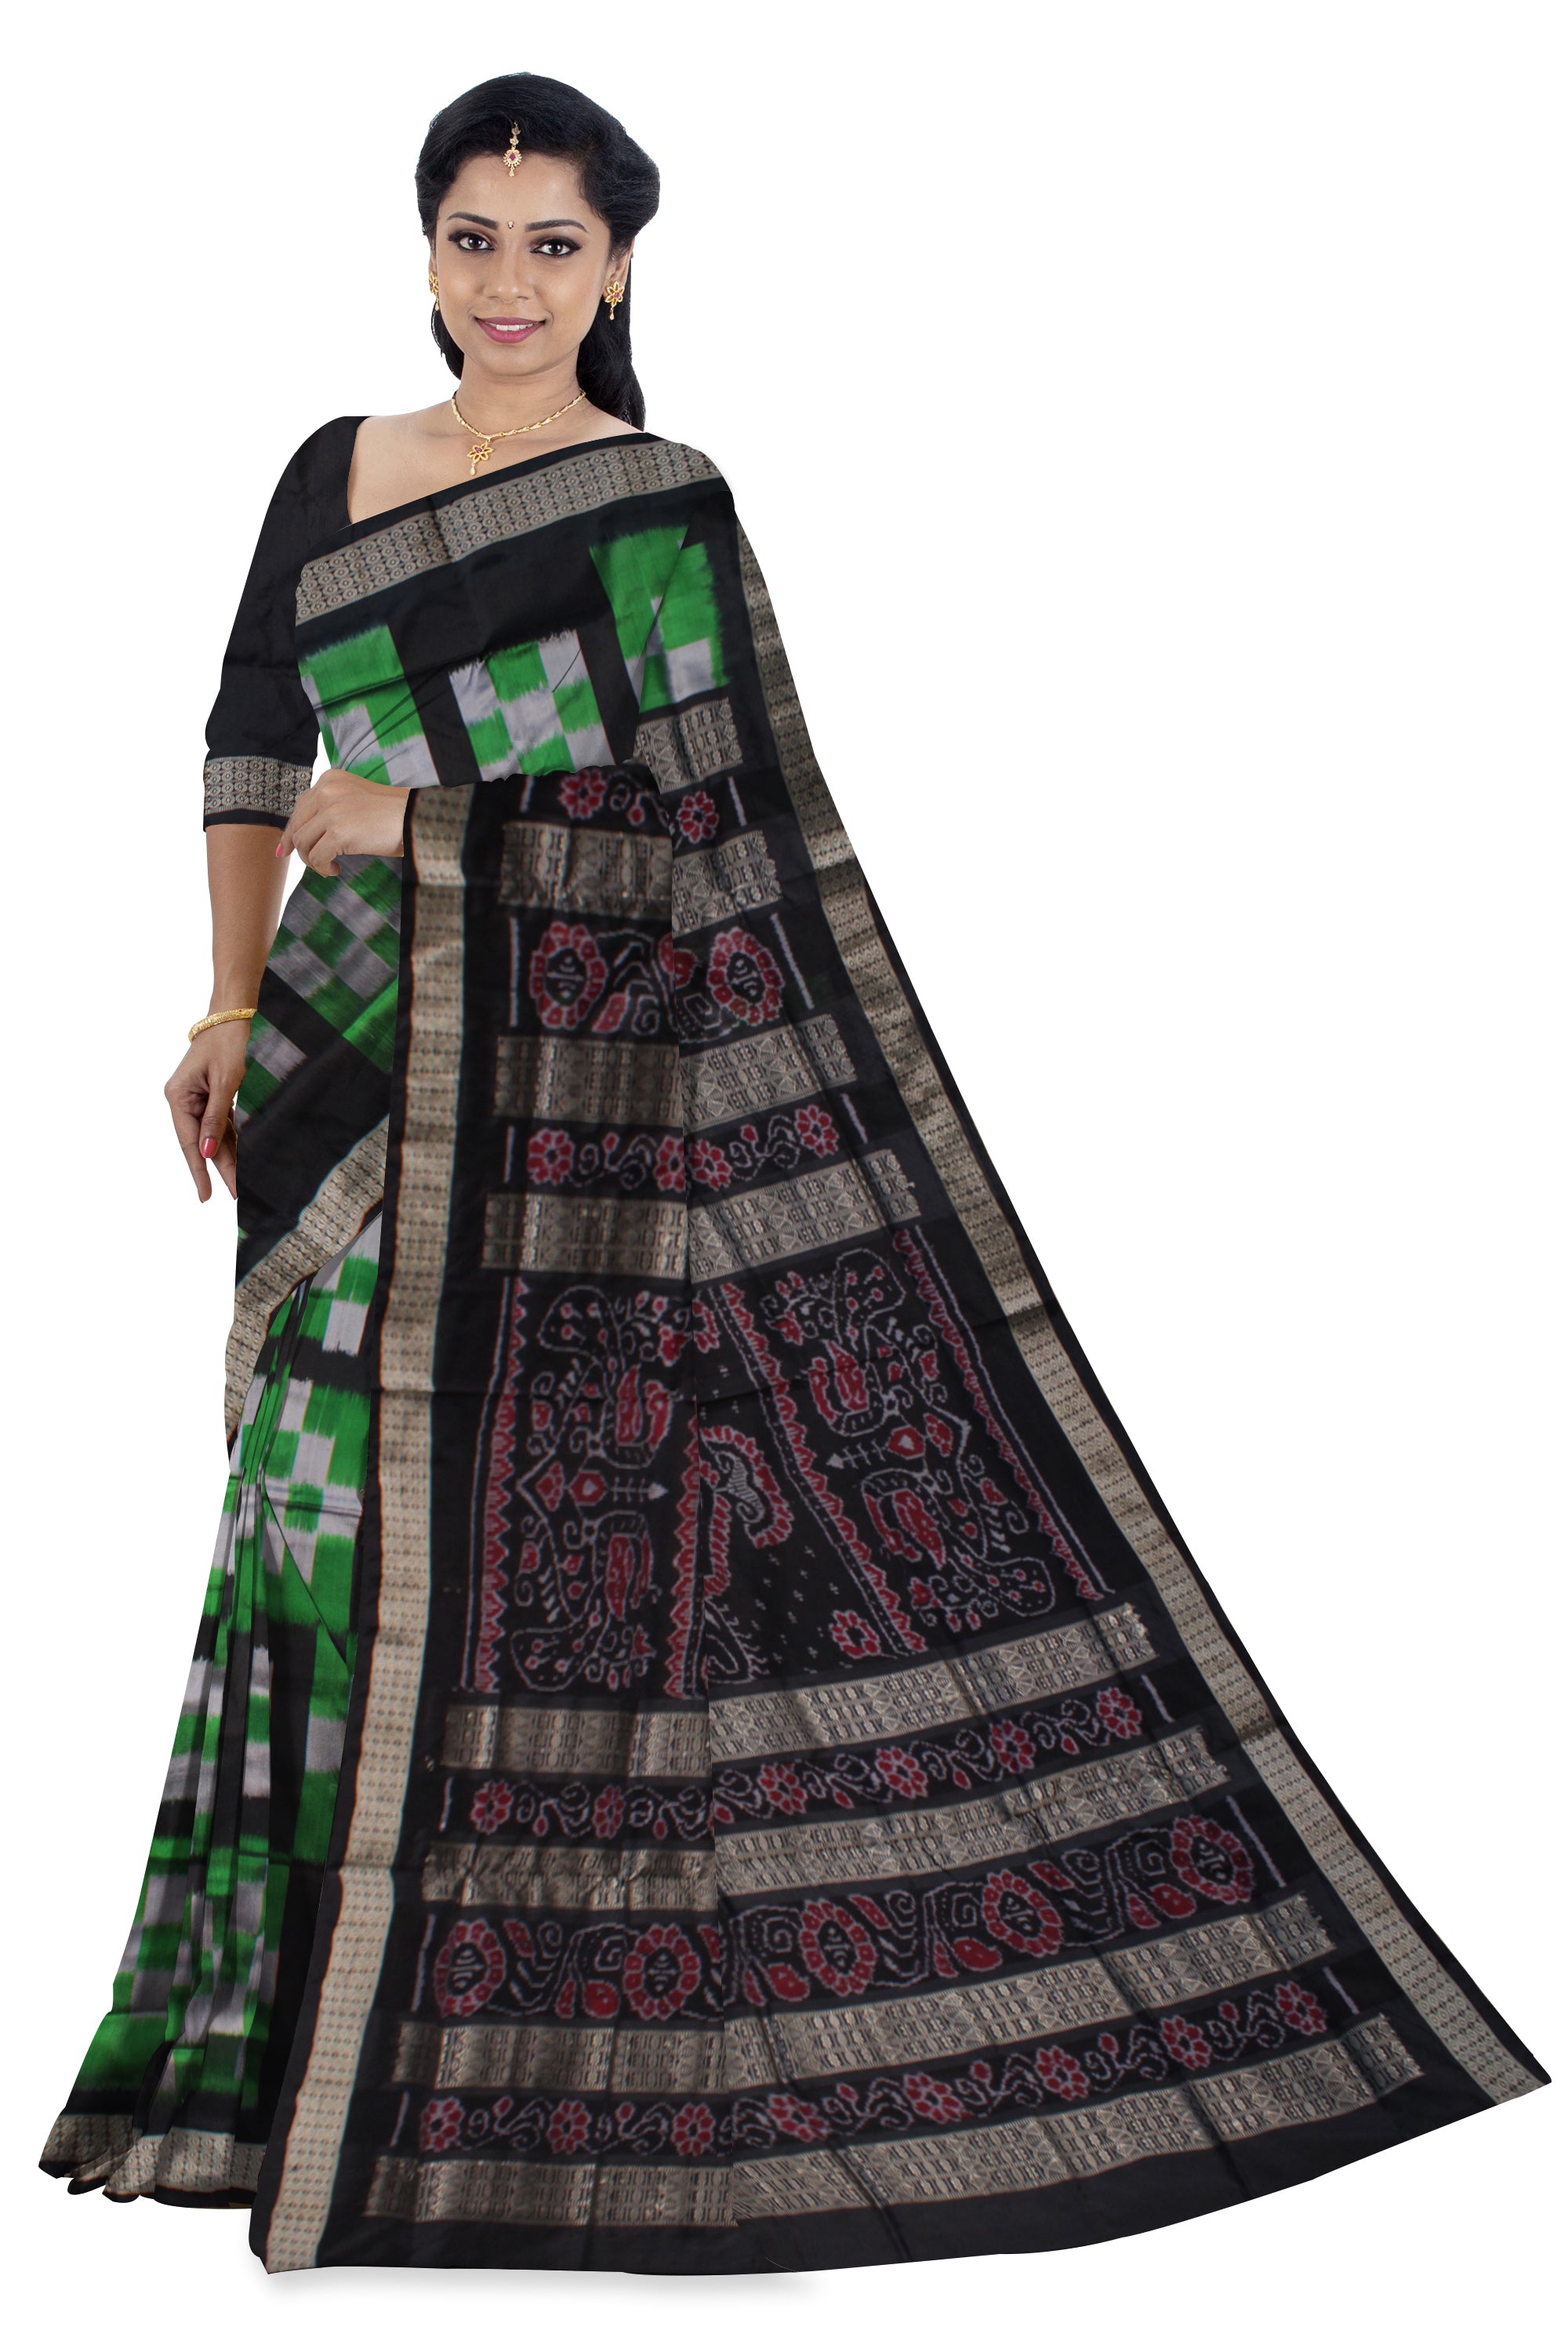 Green and black color pasapali pata saree. - Koshali Arts & Crafts Enterprise